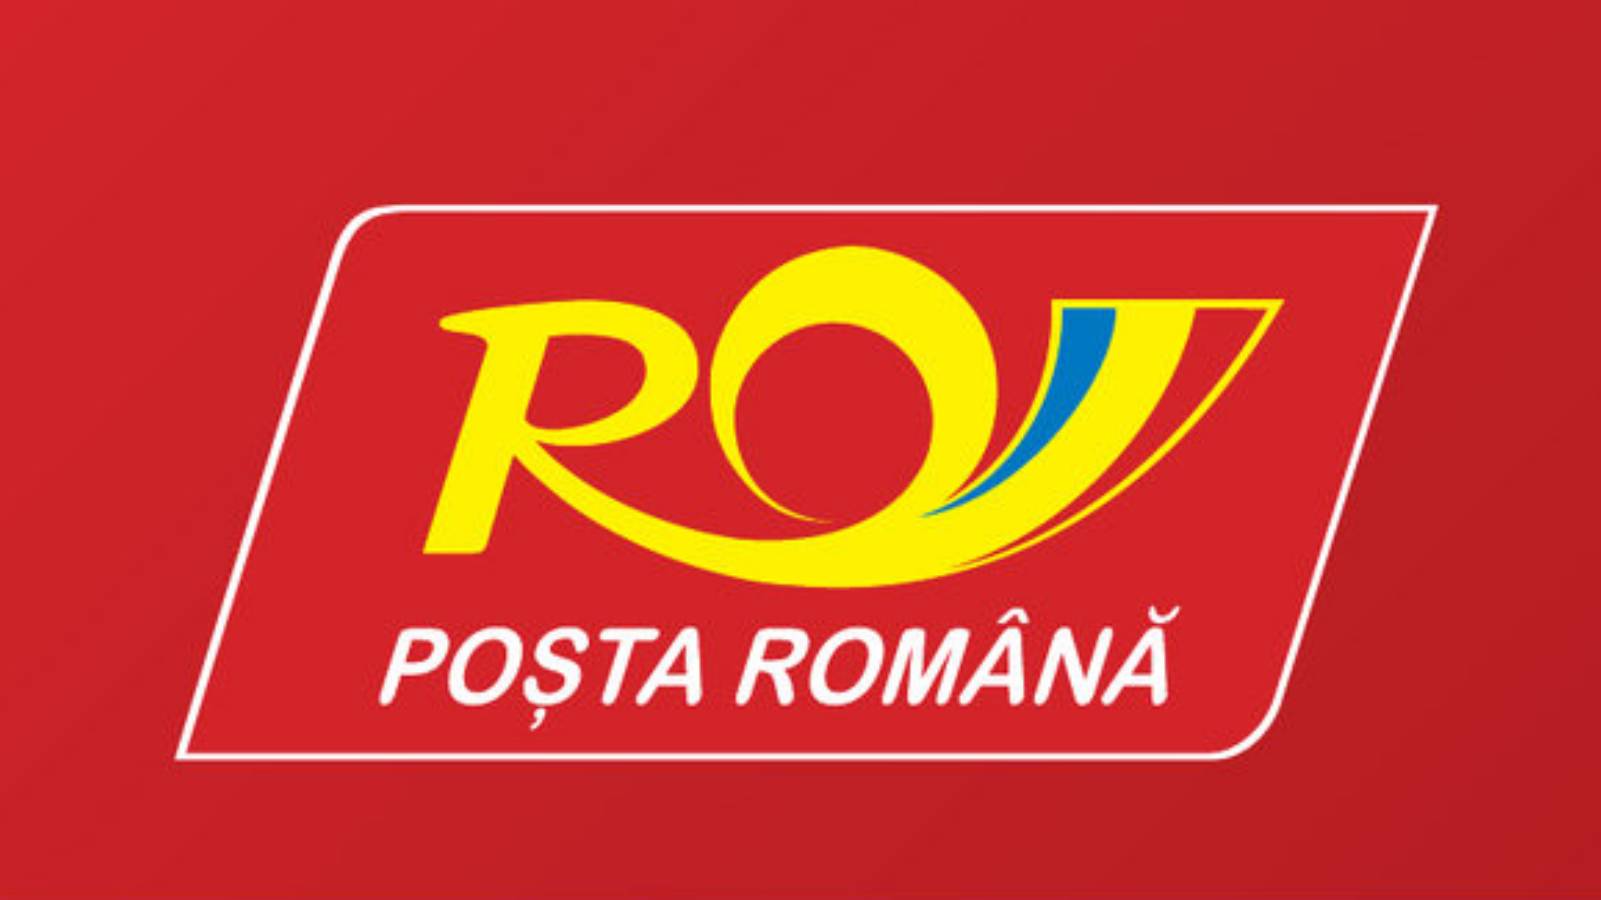 Romanian post sms kiina